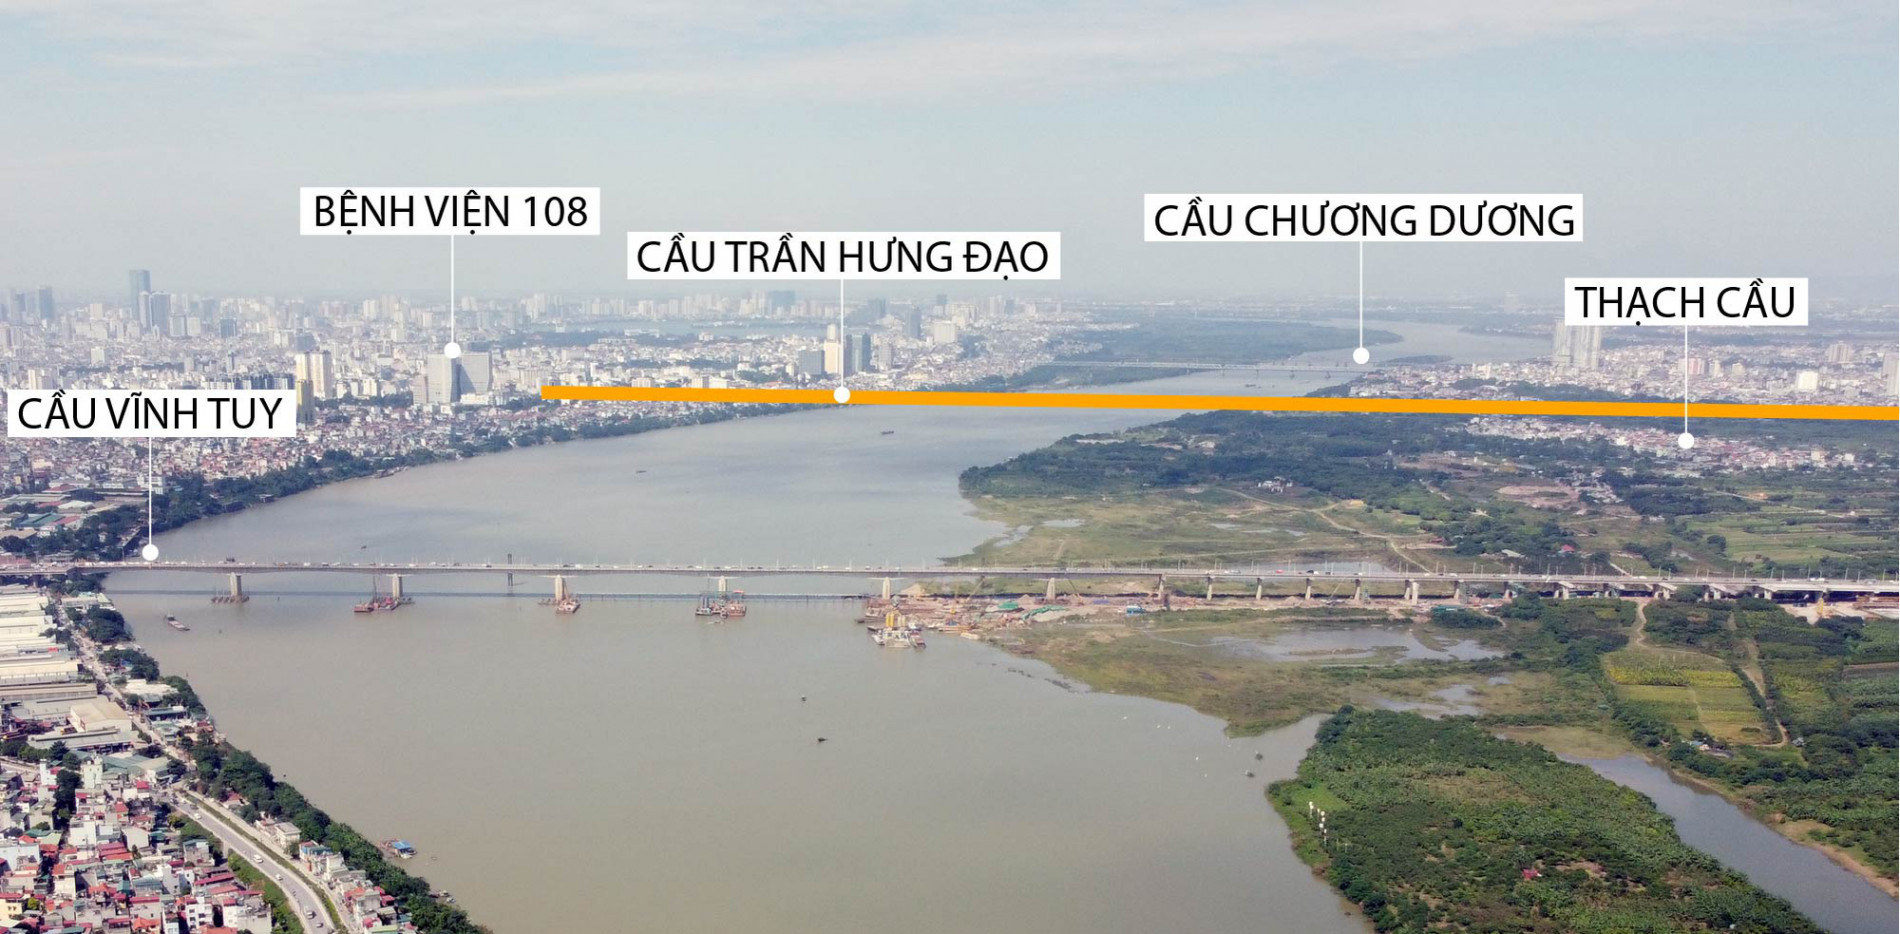 Hà Nội dự kiến làm cầu Trần Hưng Đạo, cầu Tứ Liên, vành đai 4 theo hình thức PPP trong giai đoạn 2021-2025 - Ảnh 2.